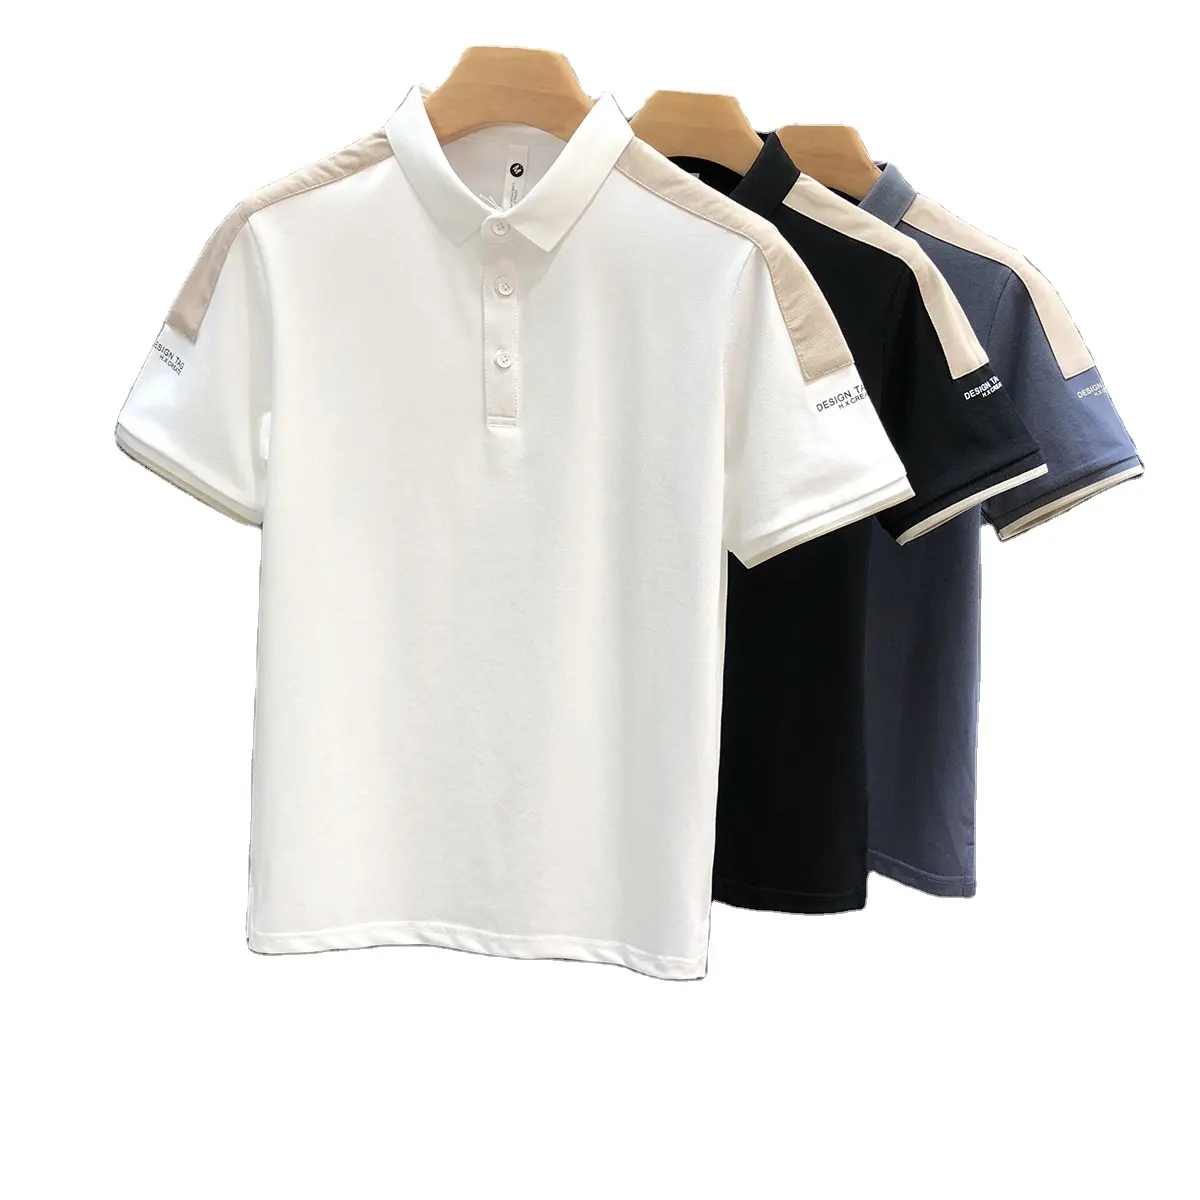 Nueva llegada de los hombres de impresión Polo Camisa de algodón en blanco de los hombres Polo camisetas logotipo bordado liso de manga corta Casual Polo camisas